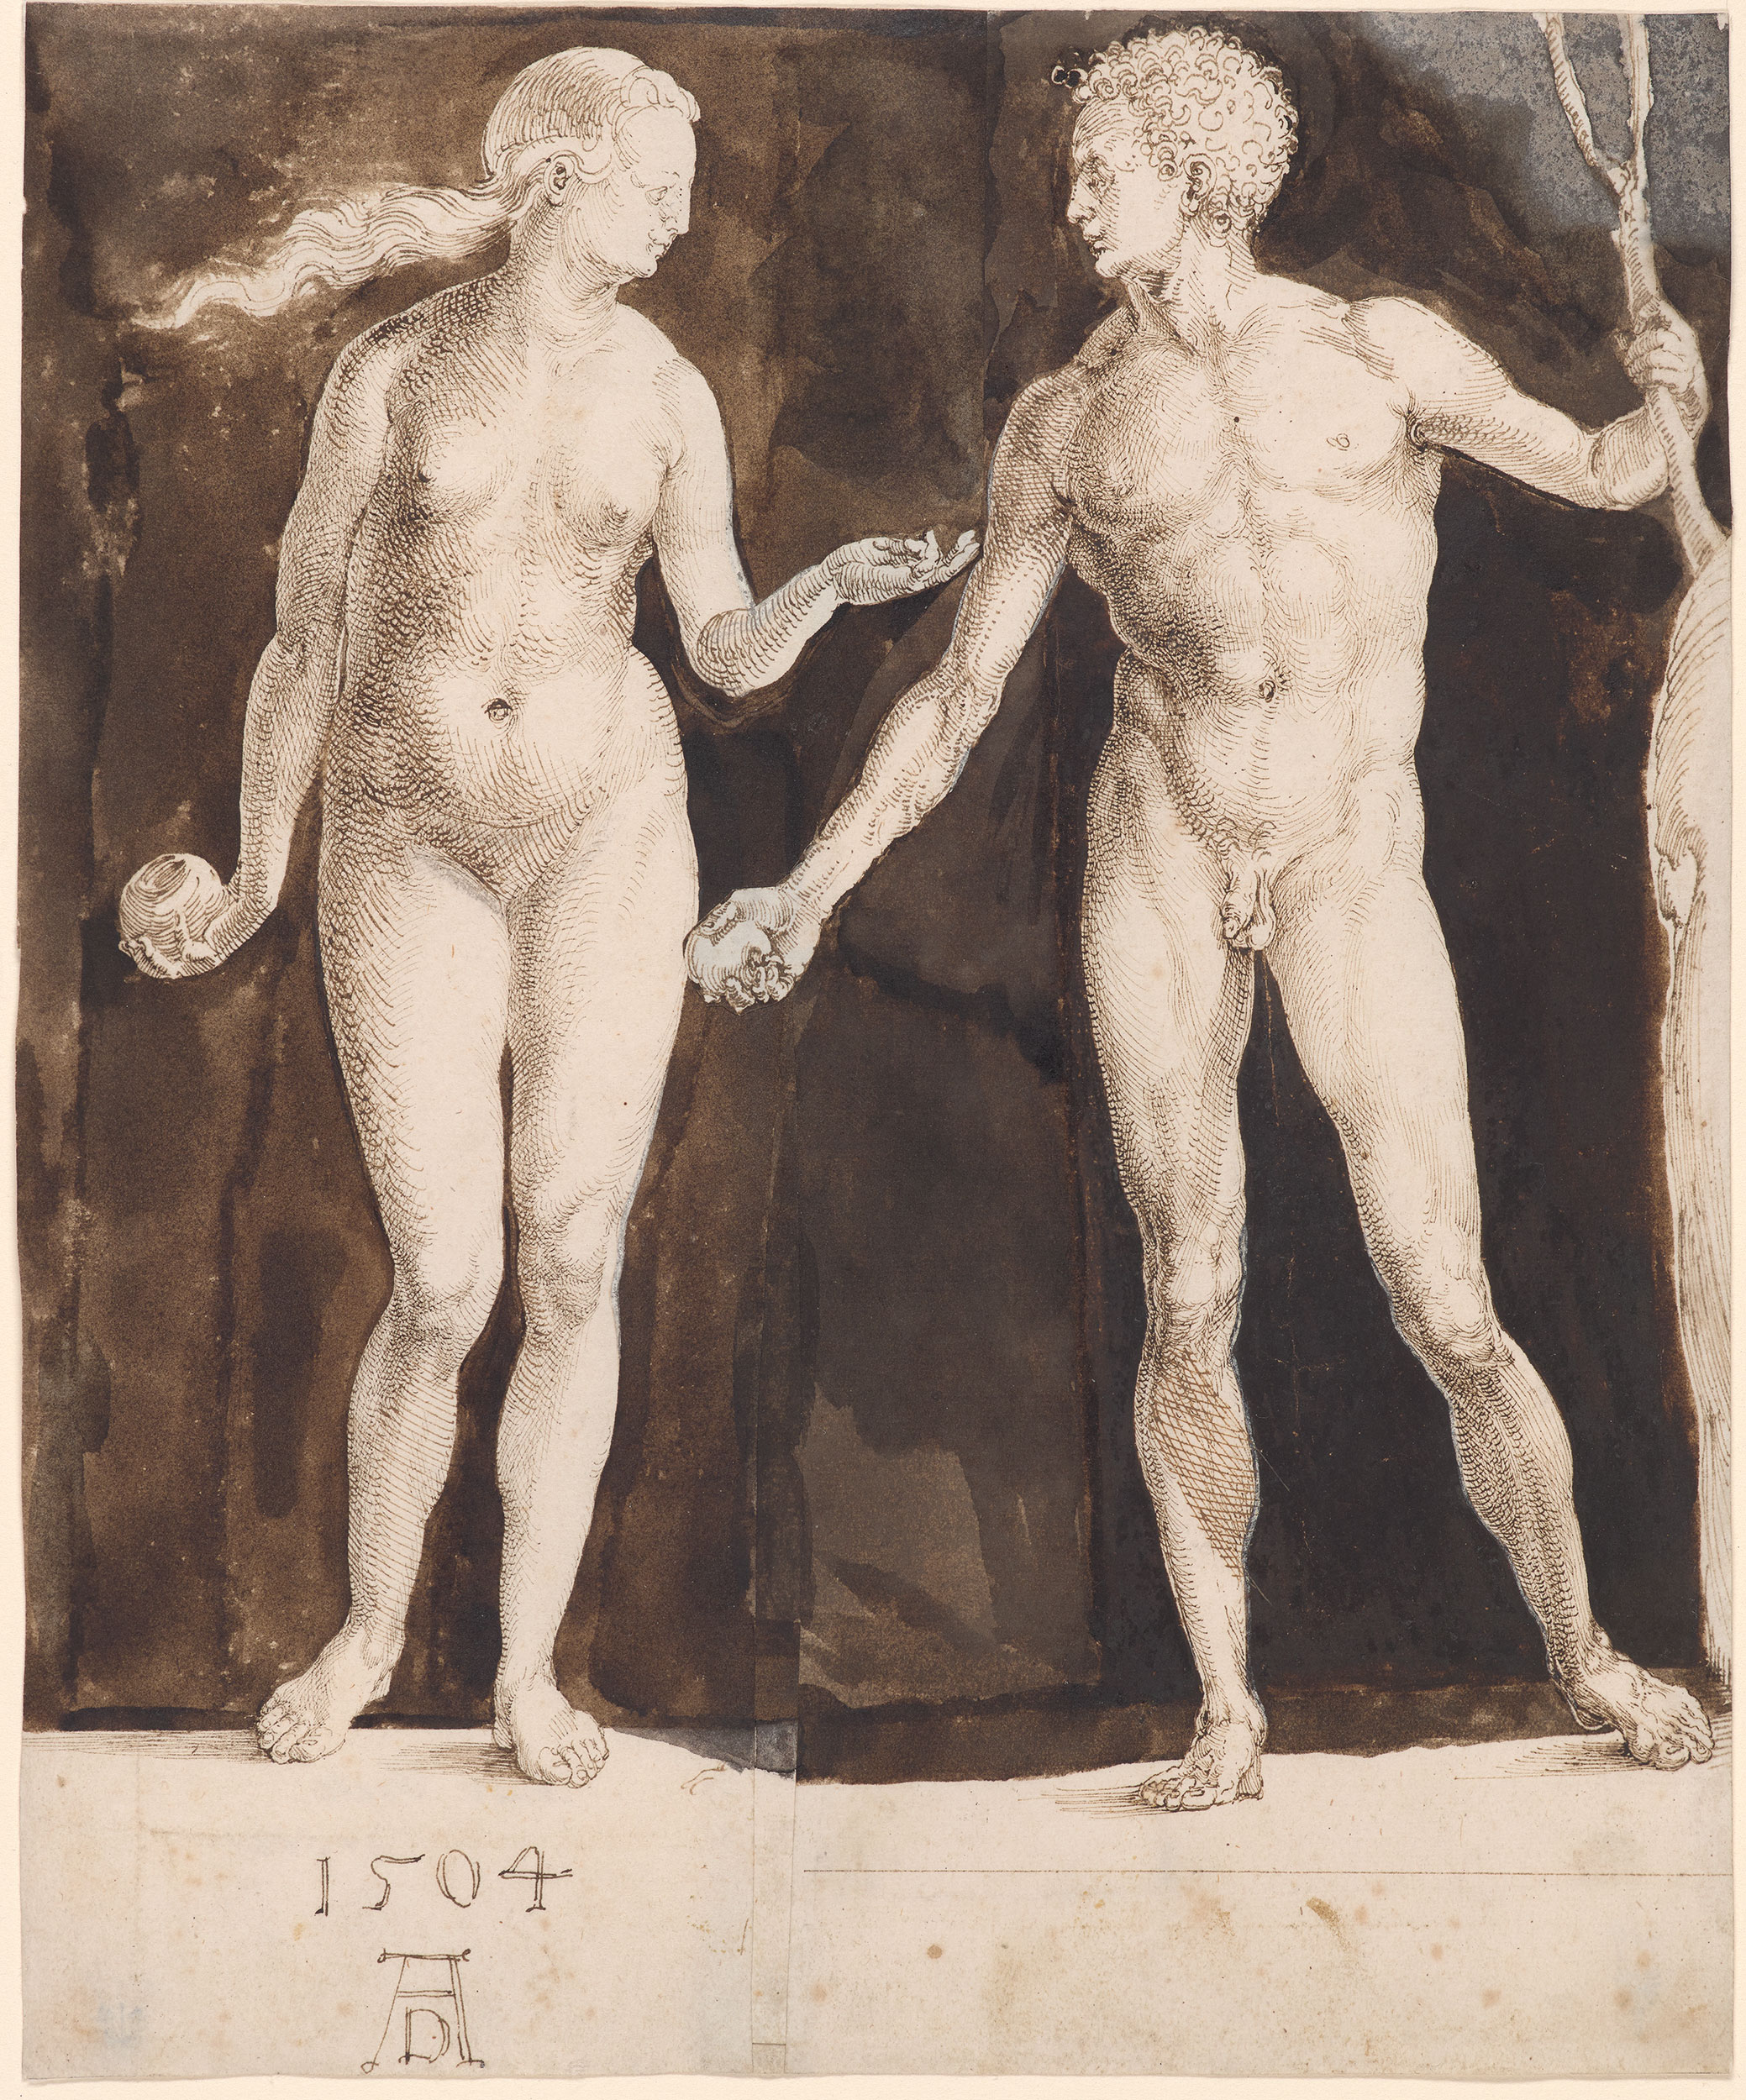 Adam and Eve by Albrecht Dürer - 1504 - 242 x 201 mm The Morgan Library & Museum